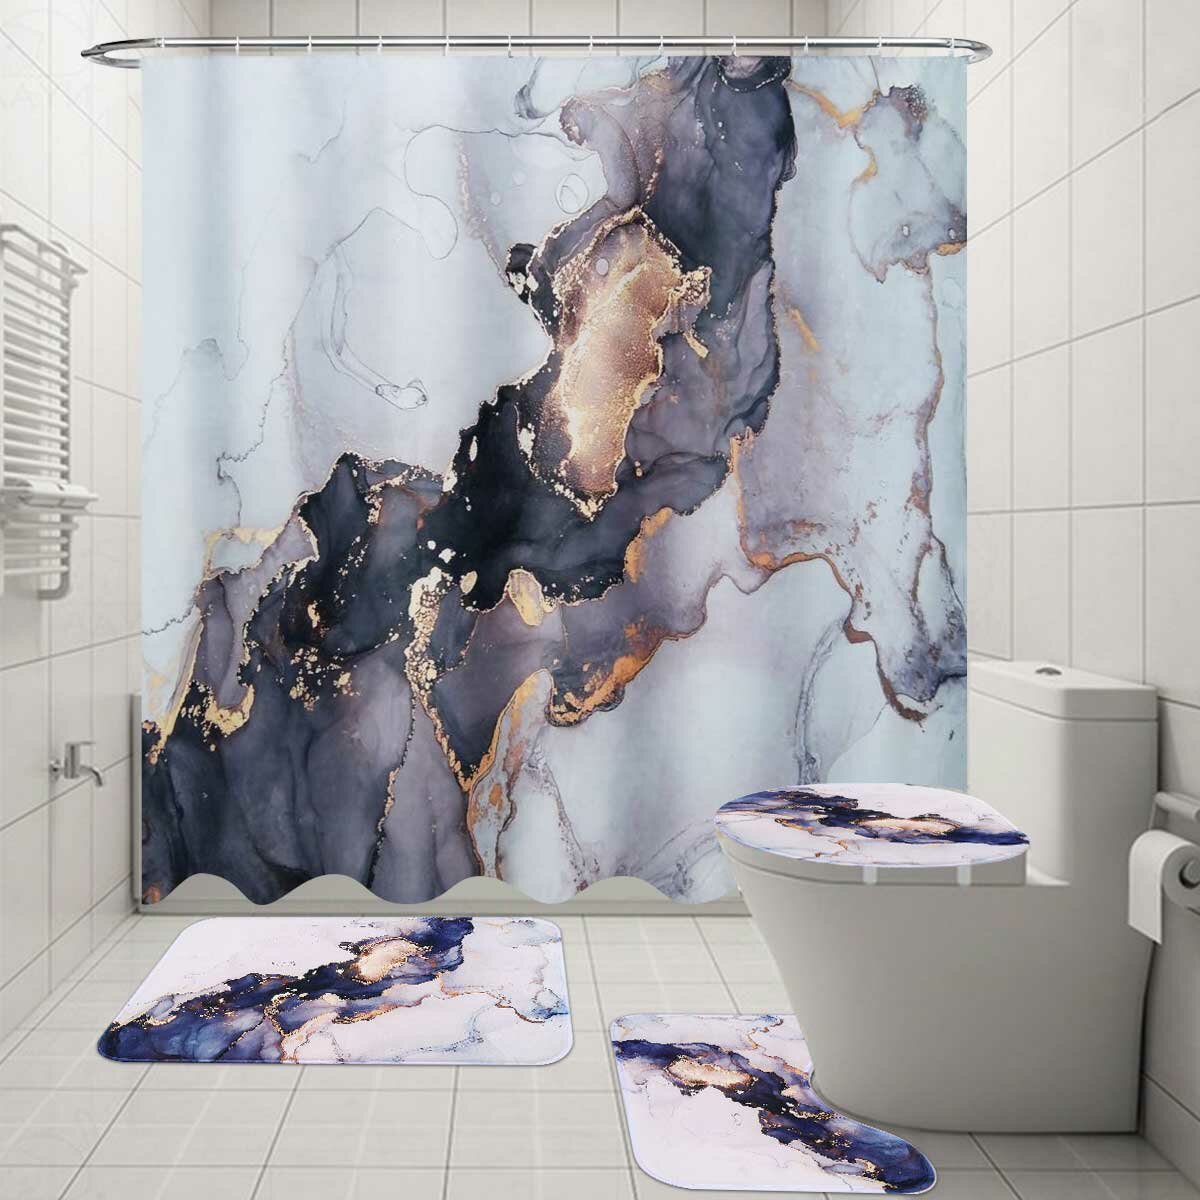 180x180CM Polyester Shower Curtain Set Waterproof Anti-slip Dustprood Fannel Bath Mat Set